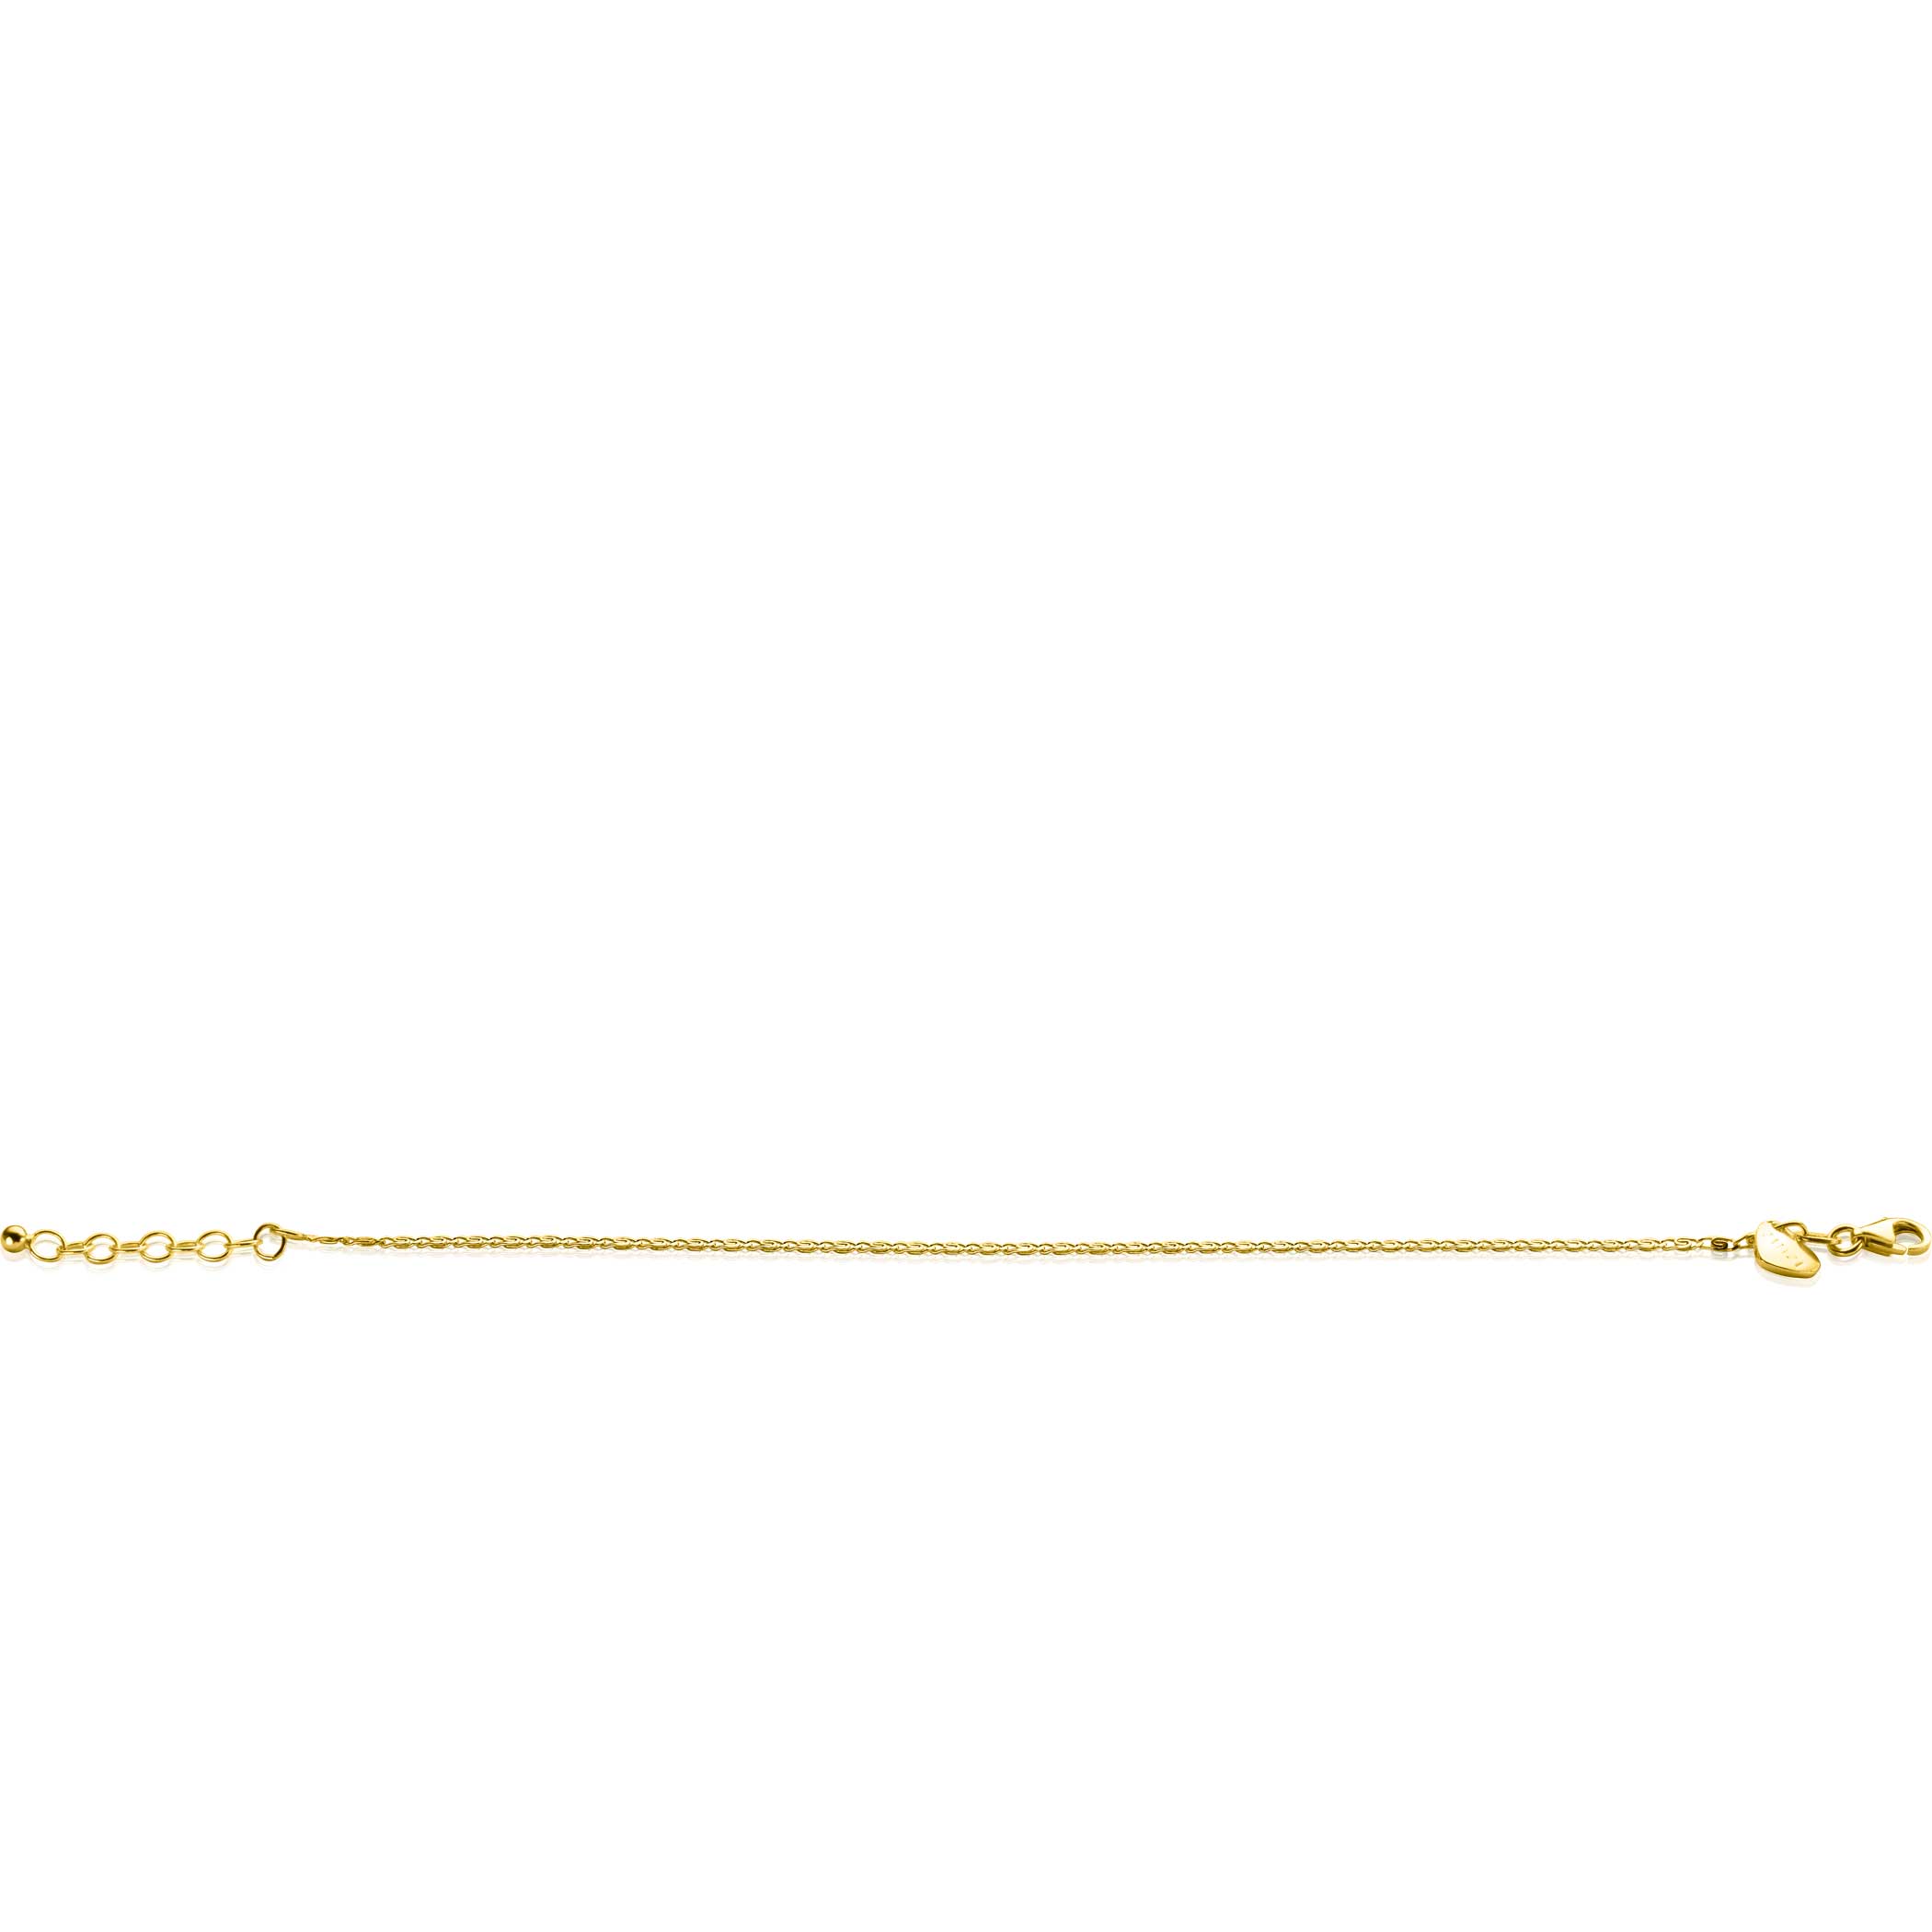 ZINZI gold plated zilveren scroll schakel armband (1,6mm breed) waarbij de schakels een dubbele krul/kronkeling maken 17-20cm ZIA2479G